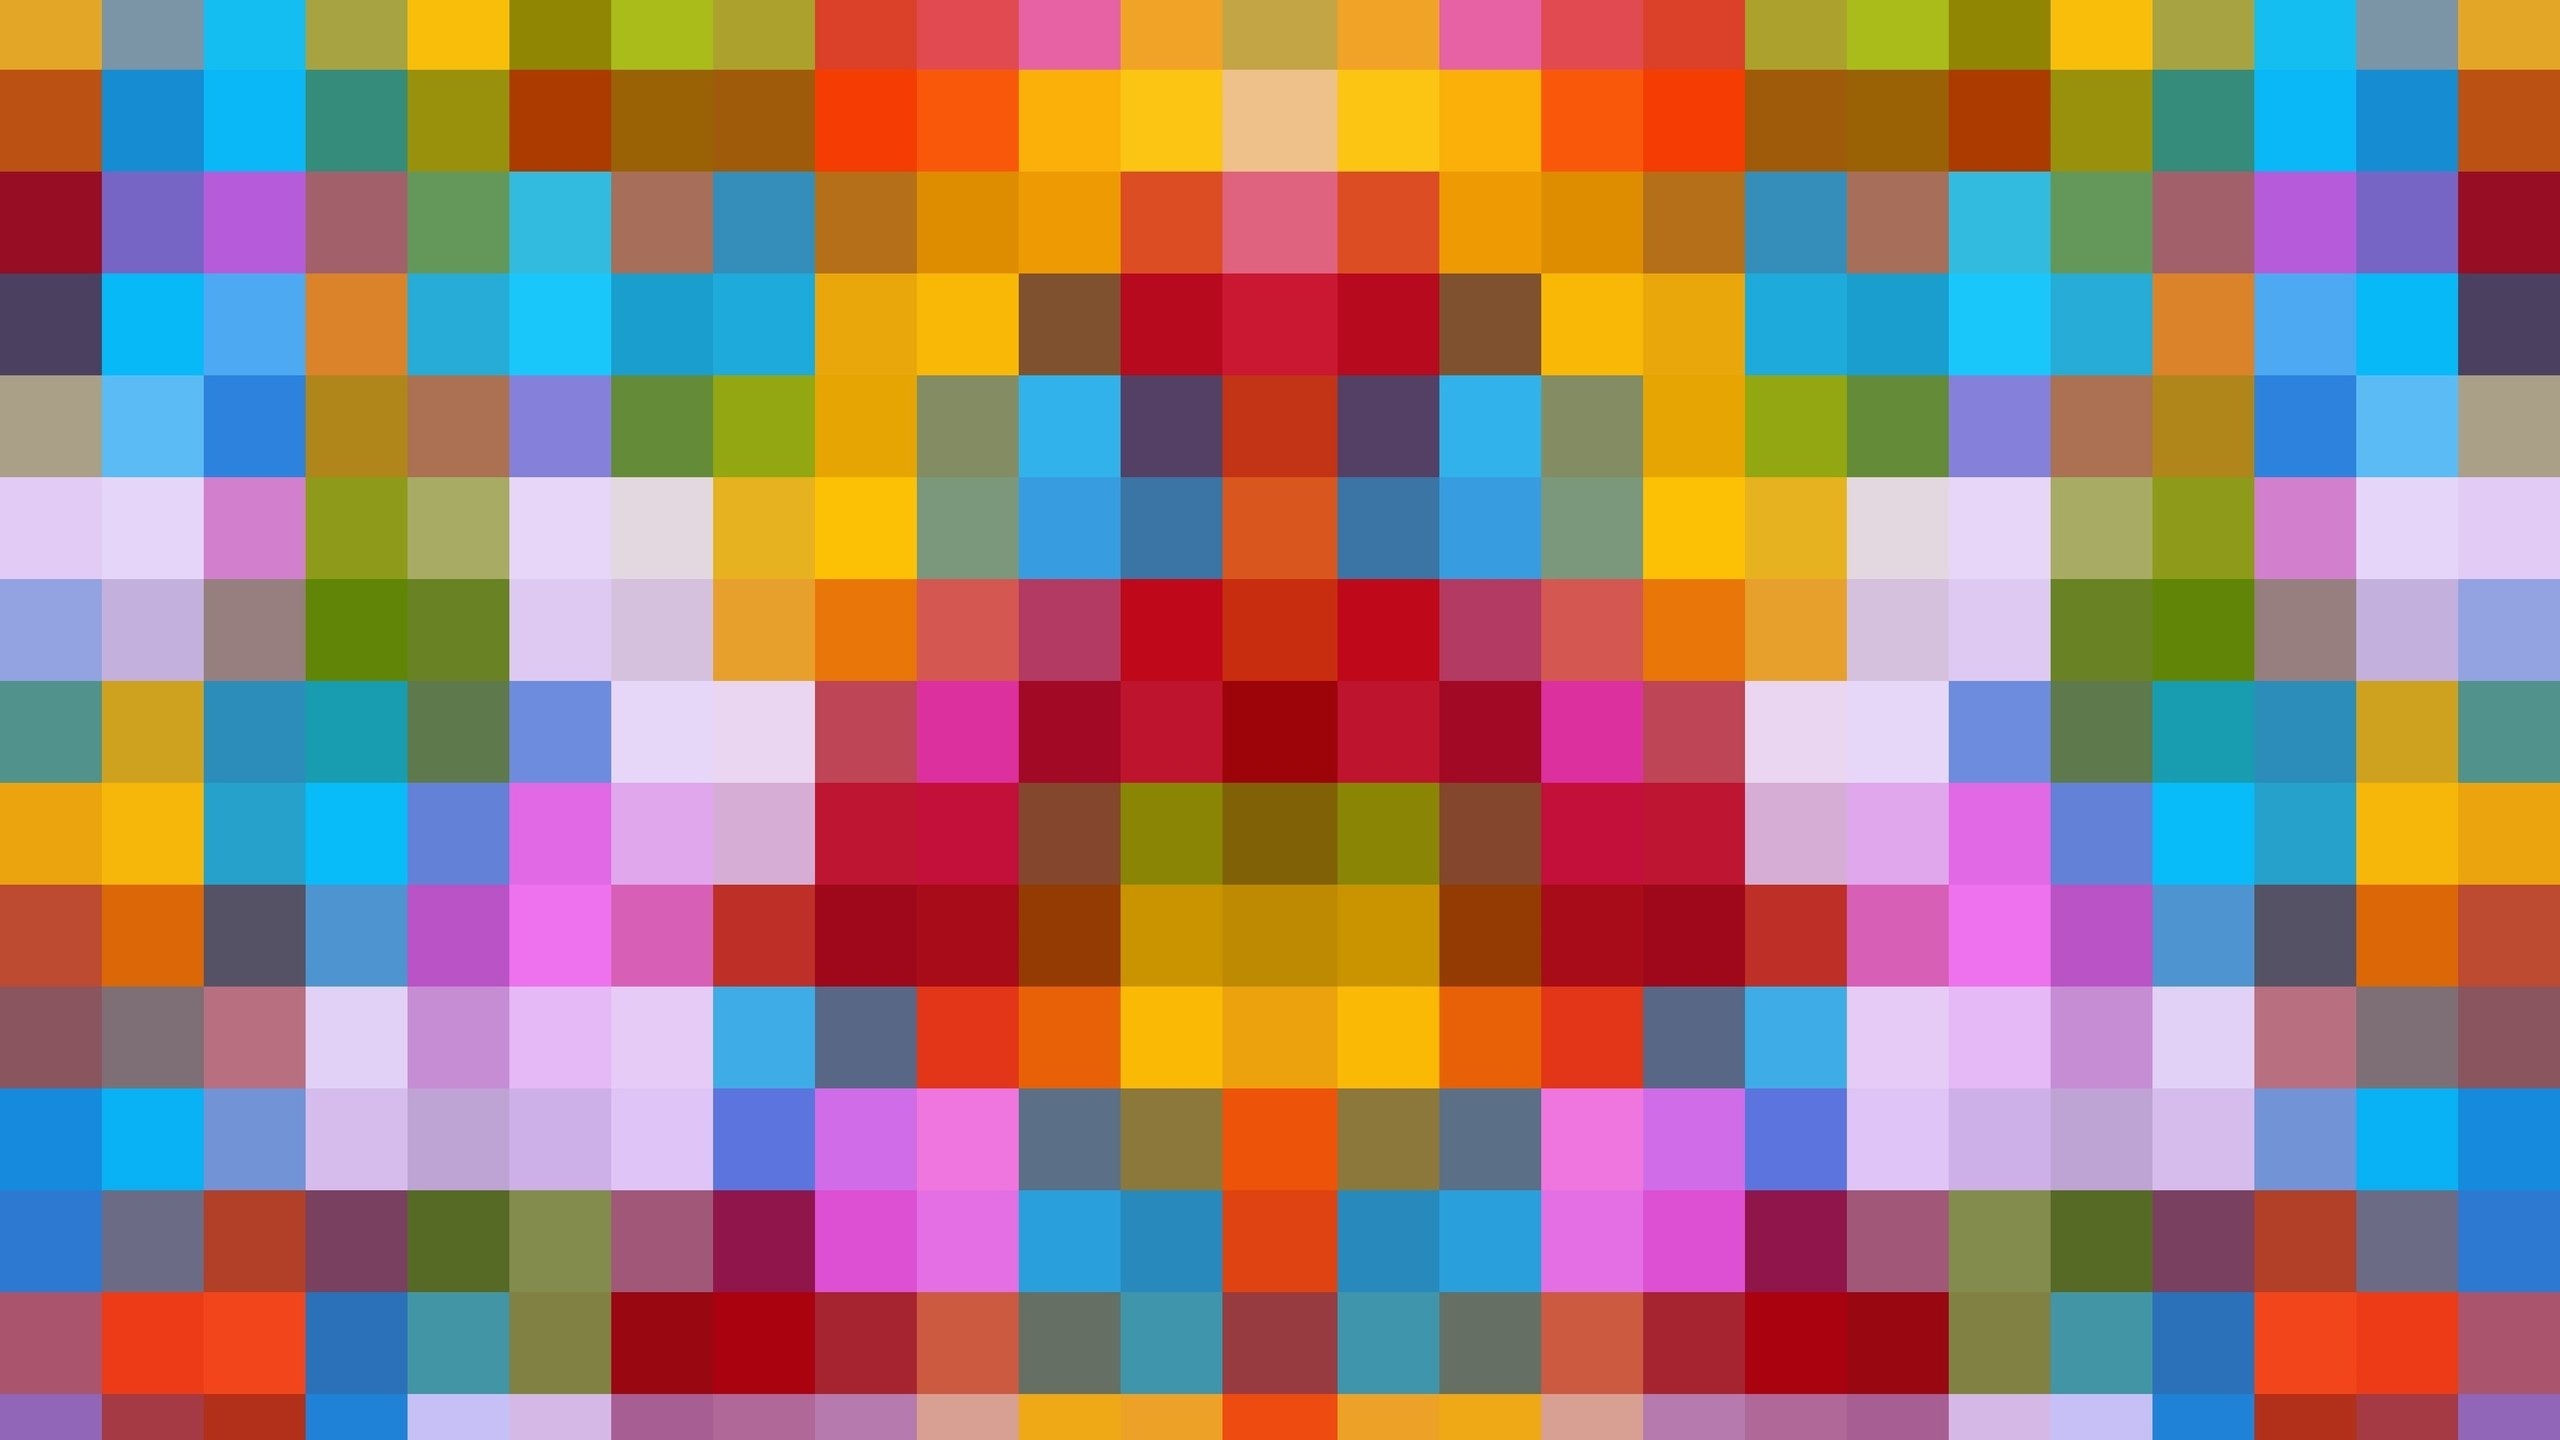 Маленький цветные квадратики. Разноцветные квадратики. Разноцветные пиксели. Фон квадратики. Разноцветные квадраты маленькие.